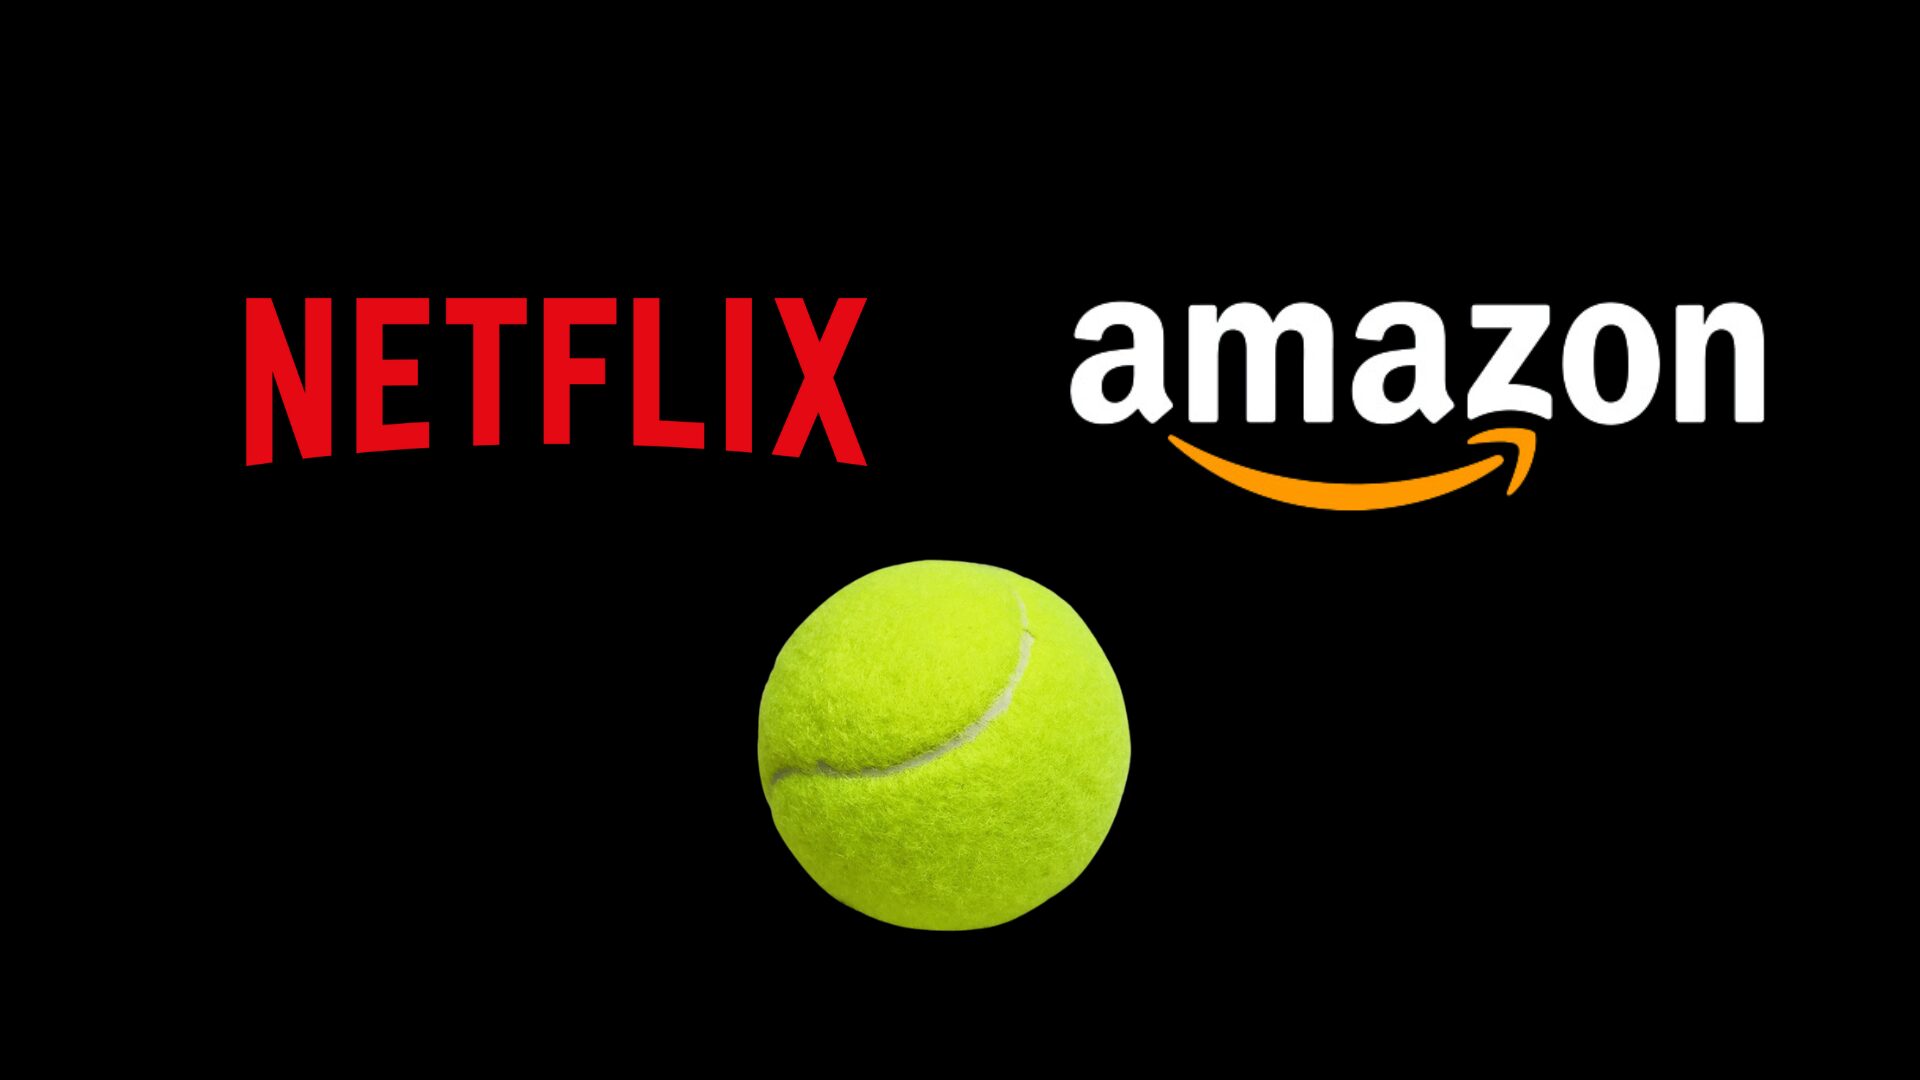 Netflix en Amazon achter een circuit van padel ?